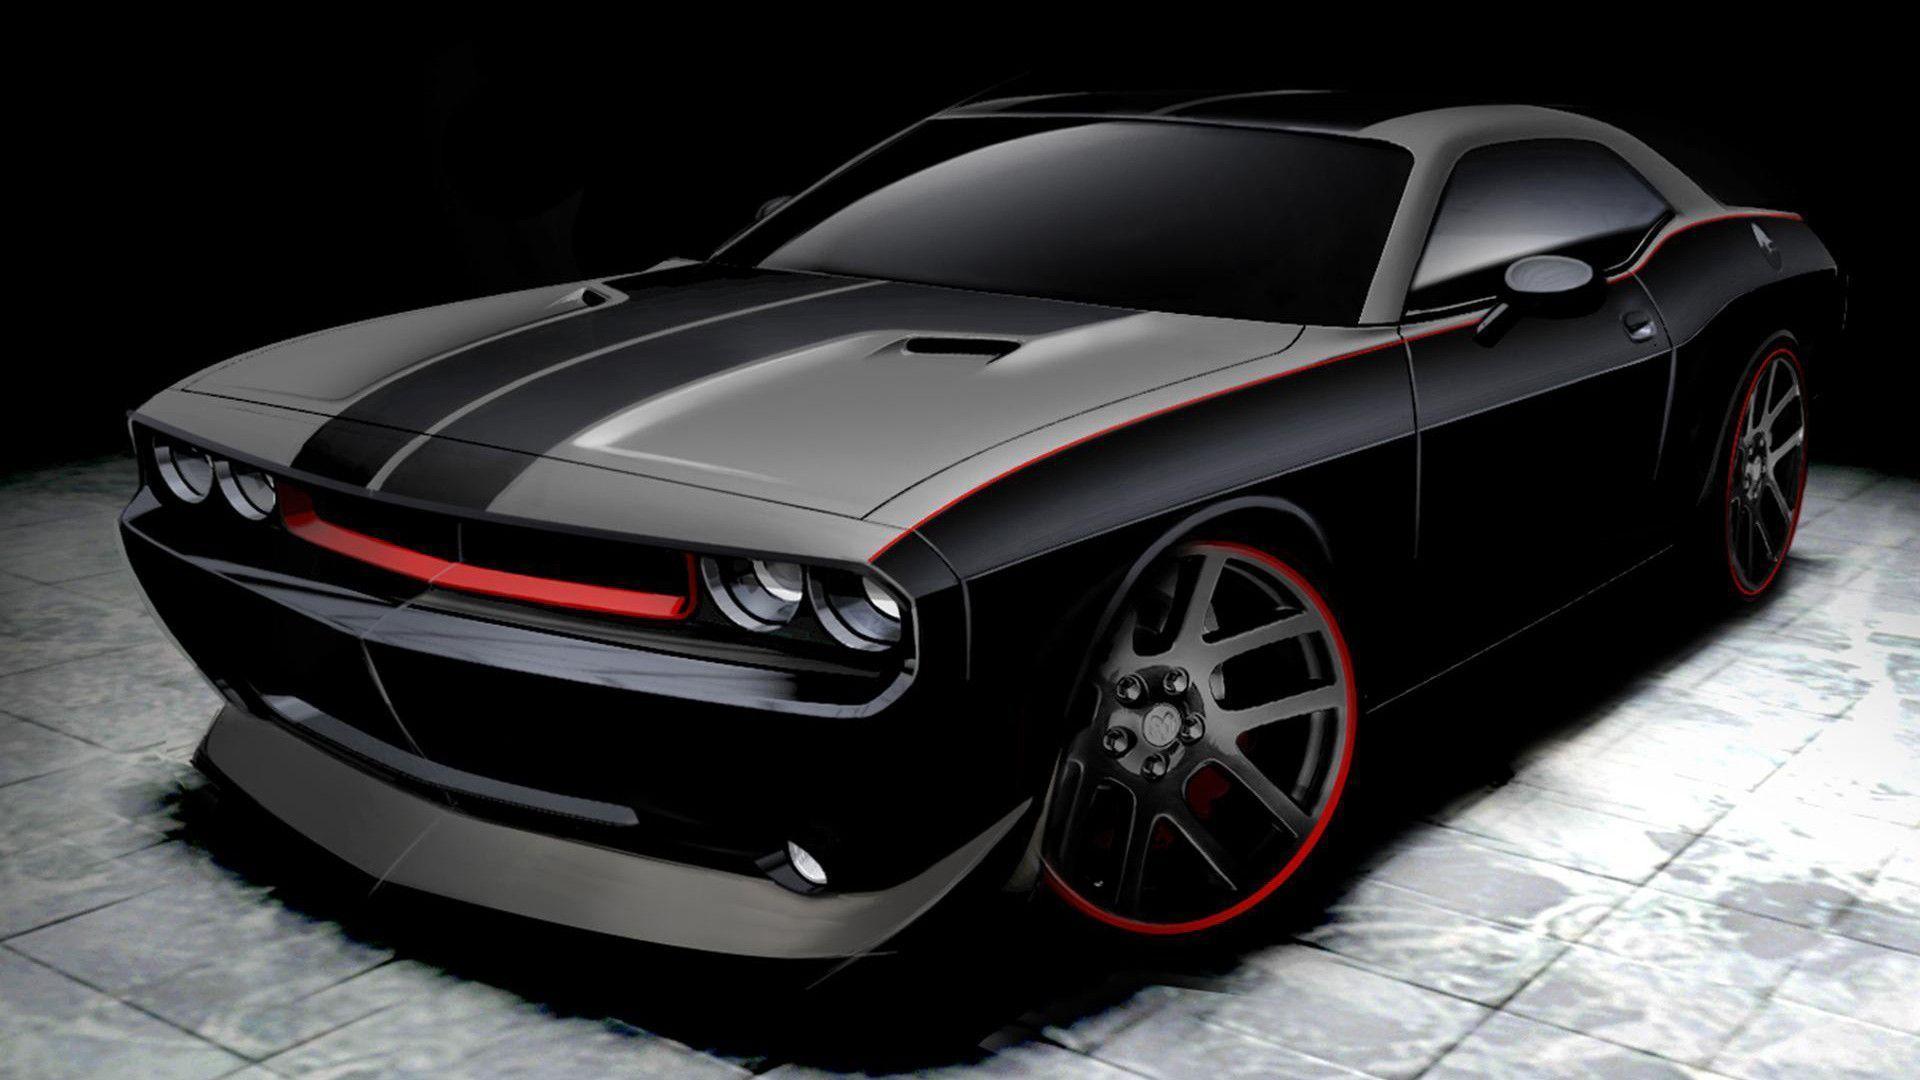 Black Dodge Charger Desktop Backgrounds Wallpapers Dodge Car